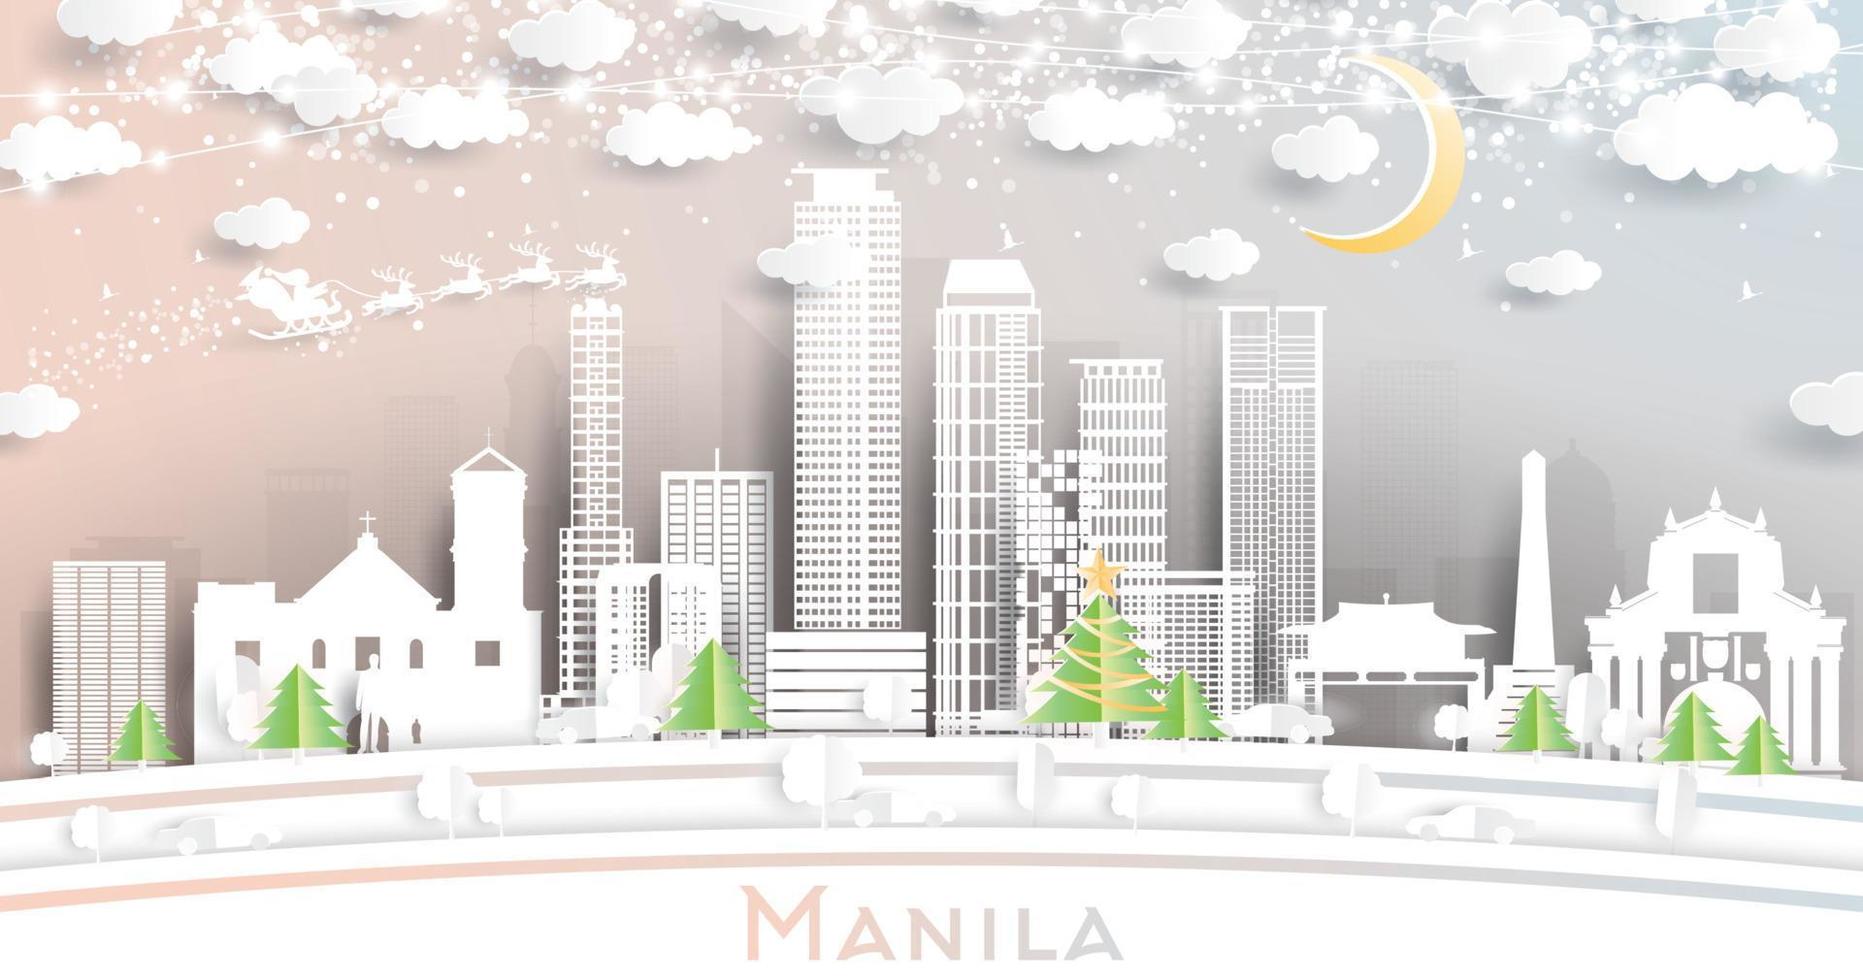 manilla Filippijnen stad horizon in papier besnoeiing stijl met sneeuwvlokken, maan en neon guirlande. vector